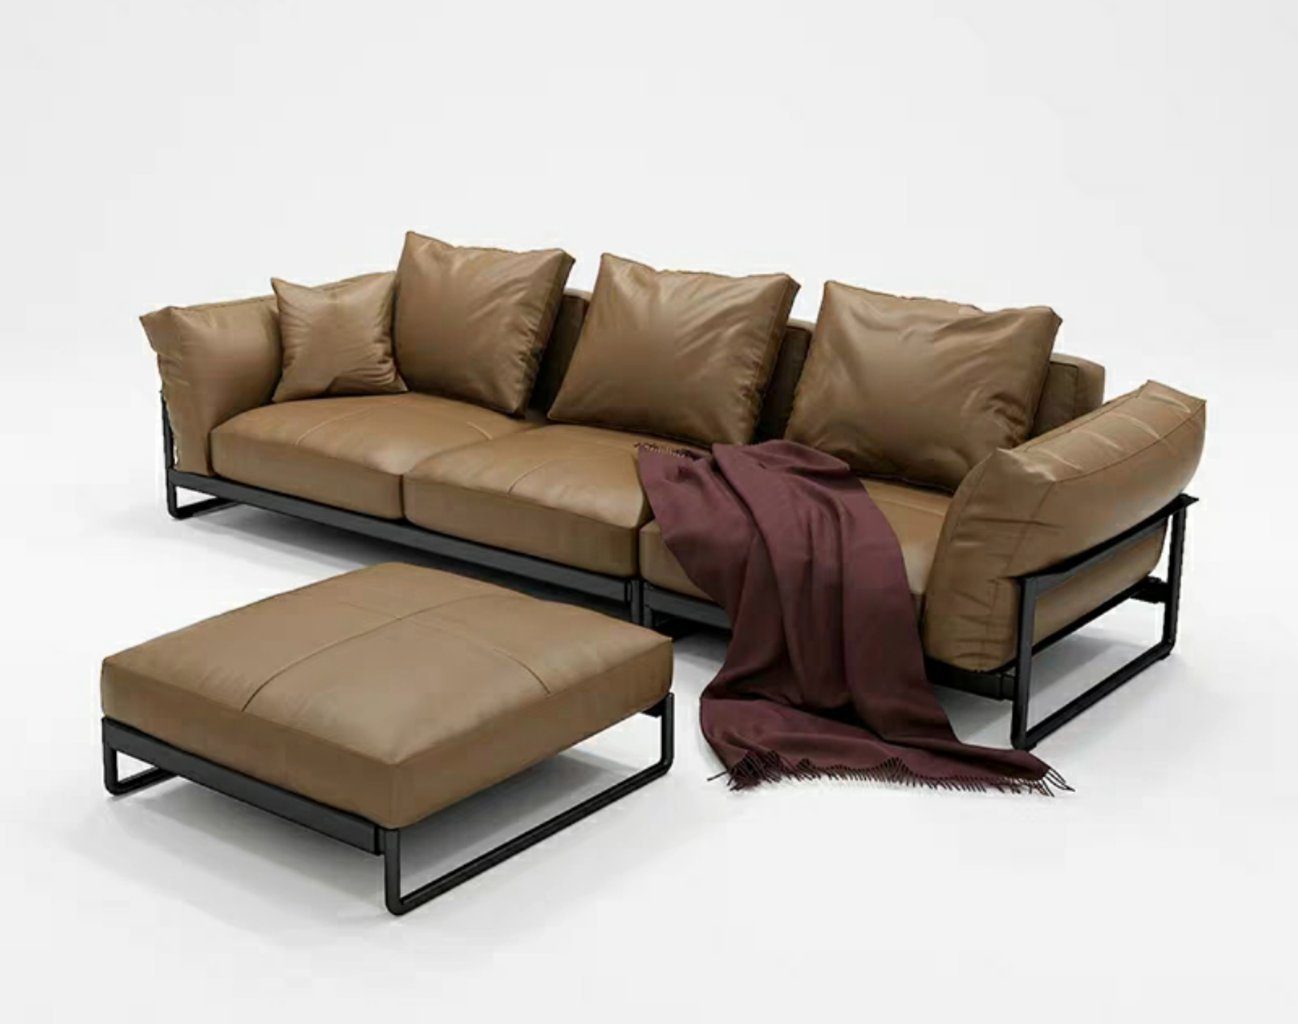 JVmoebel 3-Sitzer Design Möbel Sofa Coch 3 Sitz Polster Sofas Wohnzimmer Couchen, Made in Europe Braun